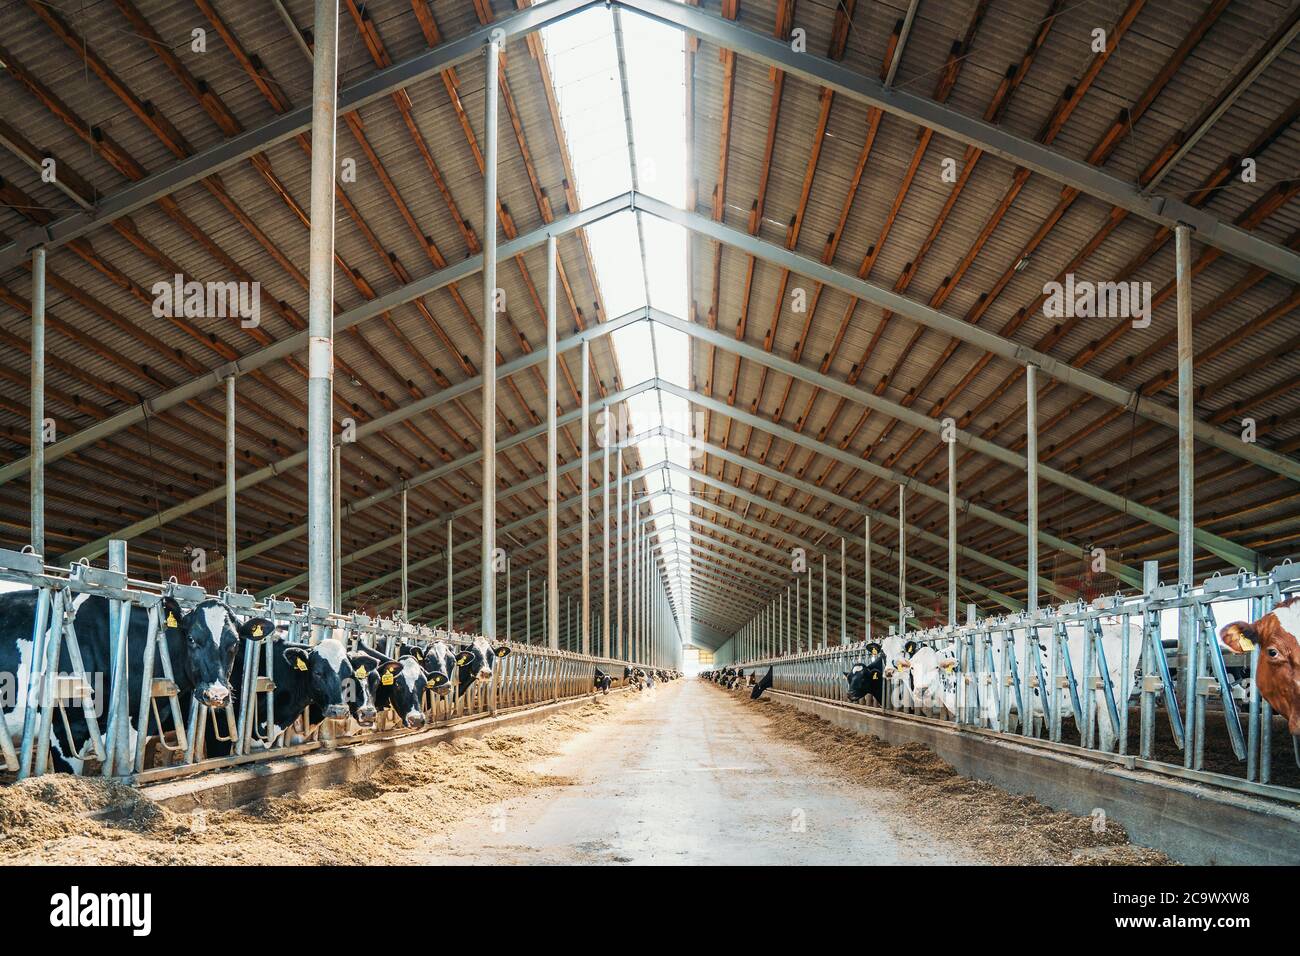 Ferme laitière, grange avec toit à l'intérieur et beaucoup de vaches mangeant du foin. Banque D'Images